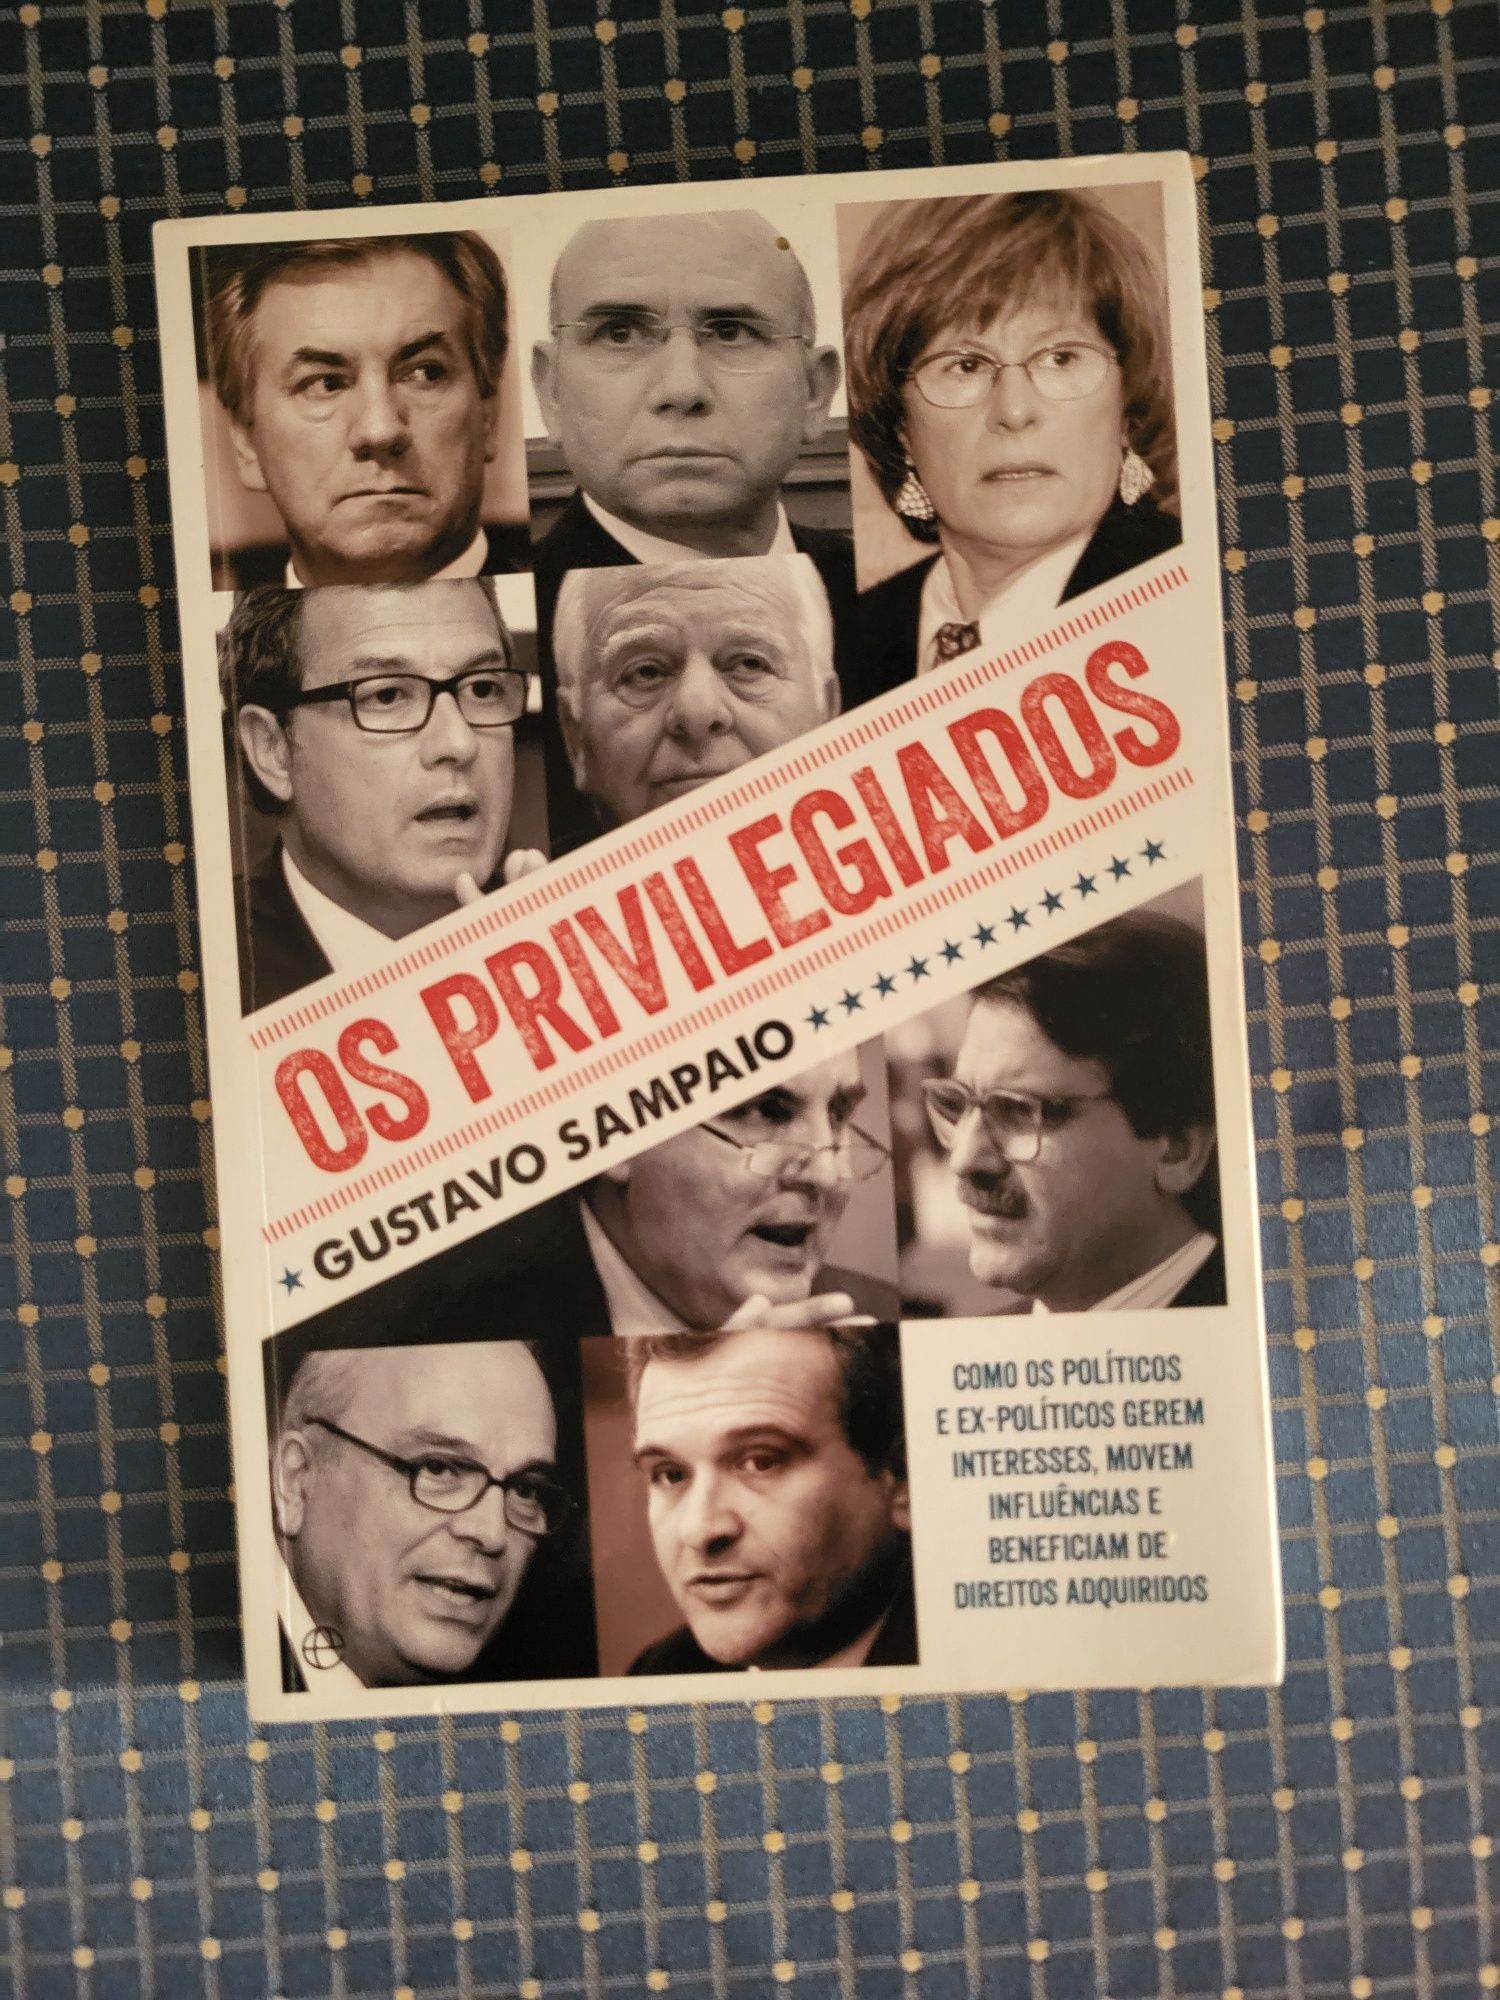 Livro "Os privilegiados"